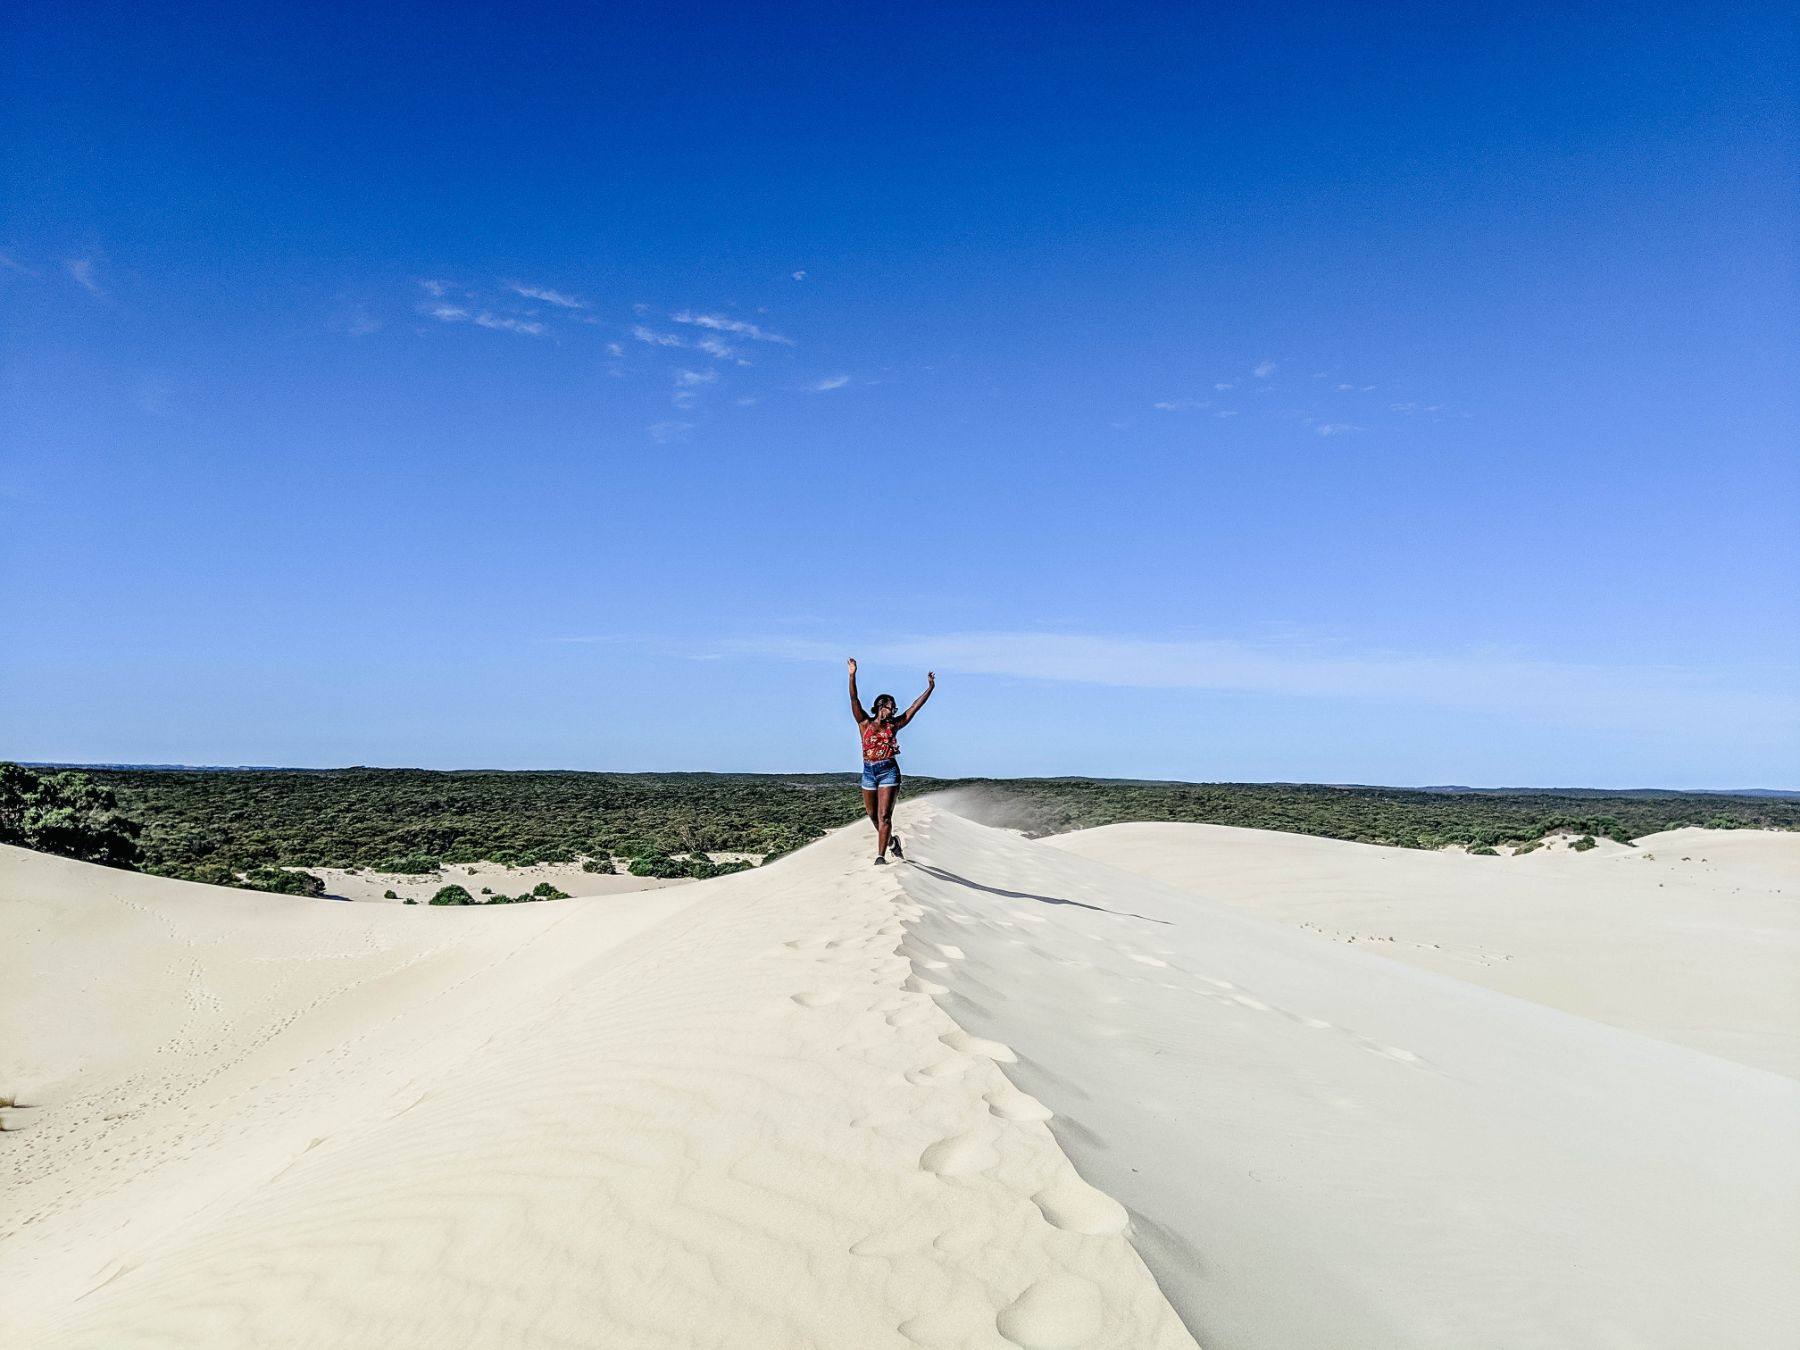 On top of the sand dunes in Little Sahara on Kangaroo Island